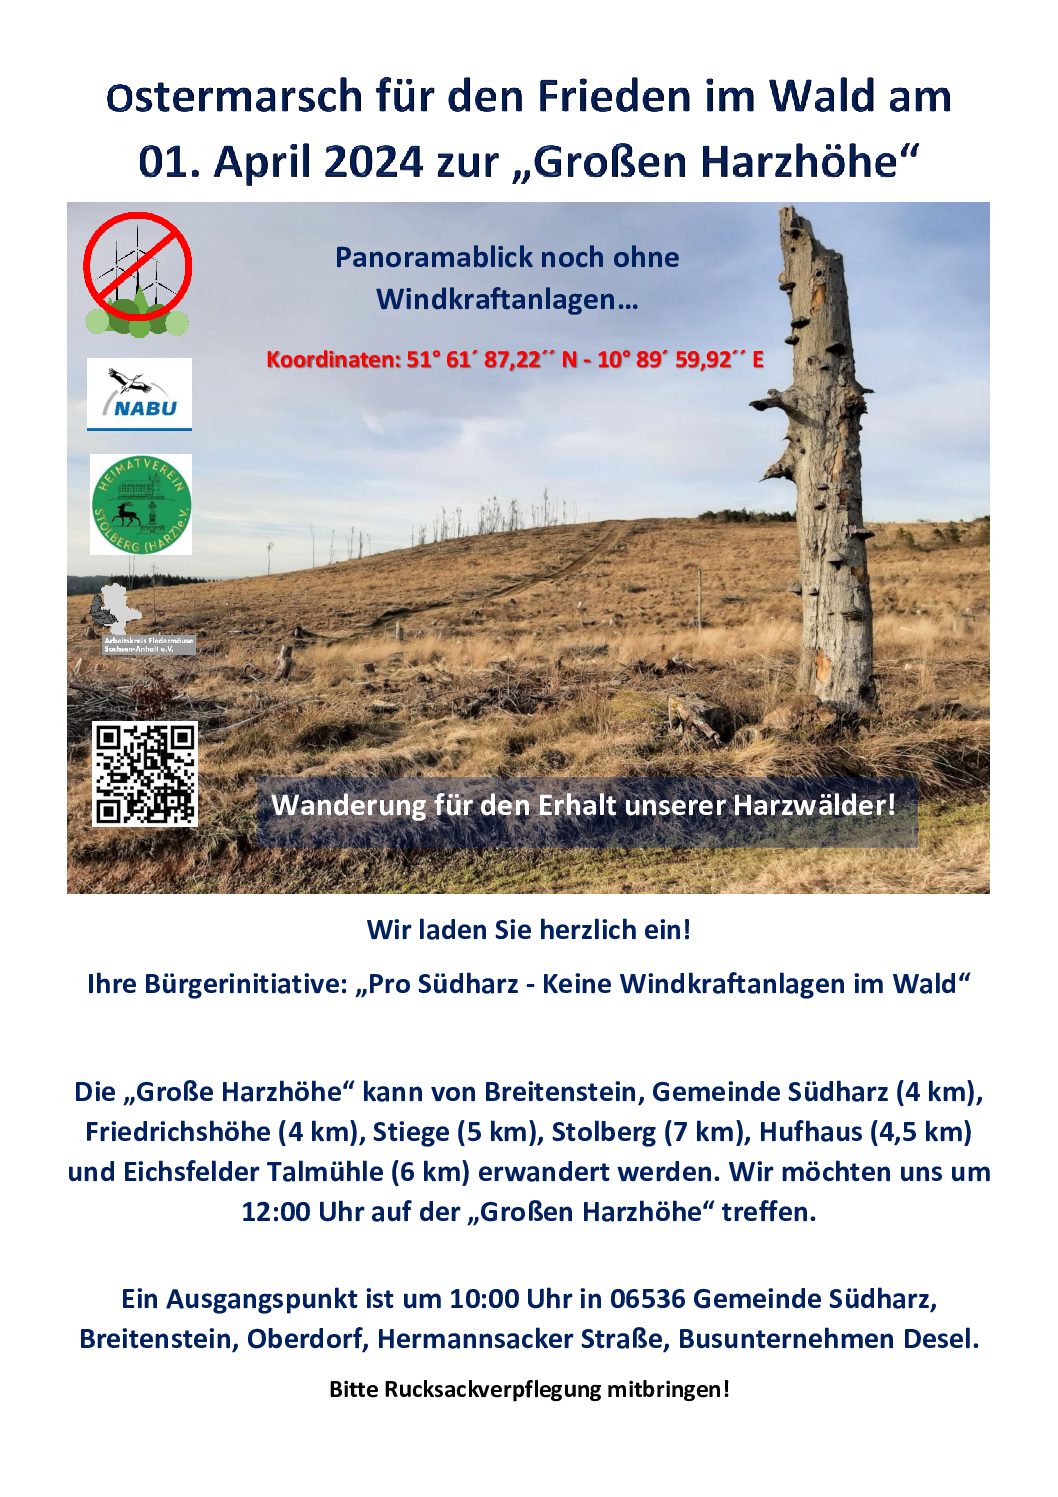 Friedensmarsch für den Wald am Ostermontag